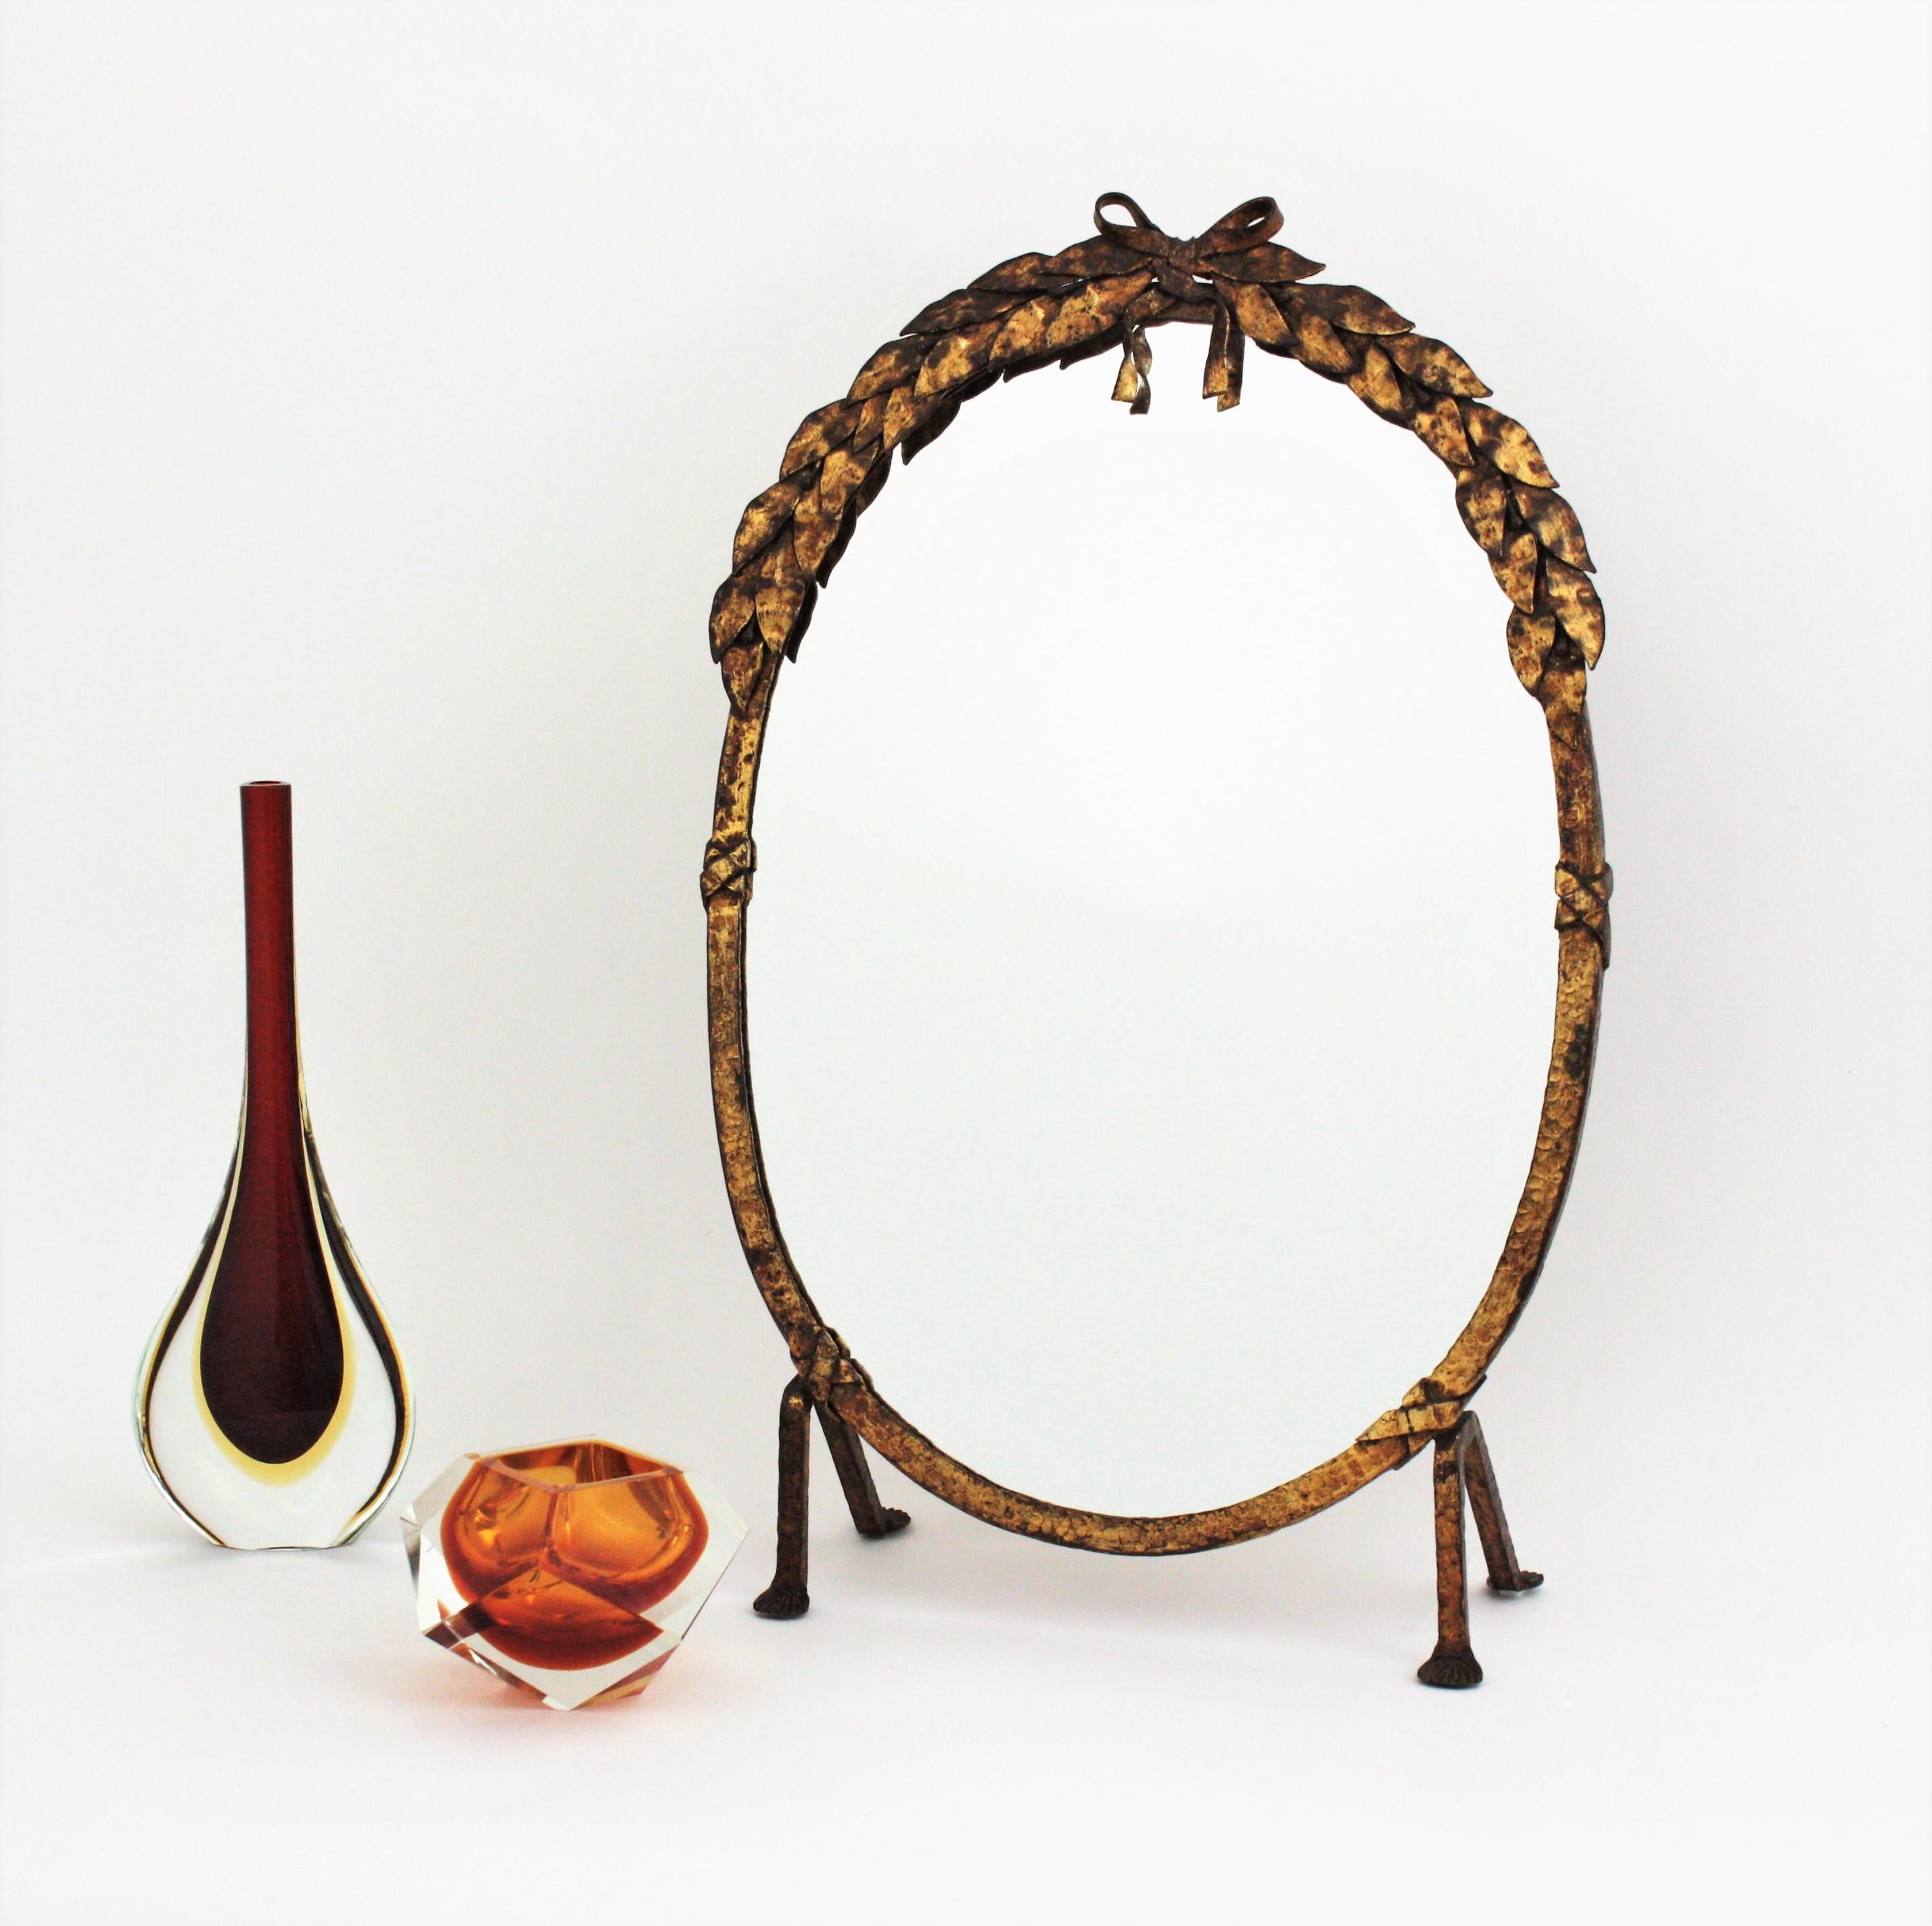 Superbe table / miroir de courtoisie ou miroir sur pied ovale en fer forgé à la main avec des détails de feuillage, France, années 1940.
Ce joli miroir ovale est entièrement réalisé à la main en fer. Il se dresse sur quatre pieds en fer. Le cadre